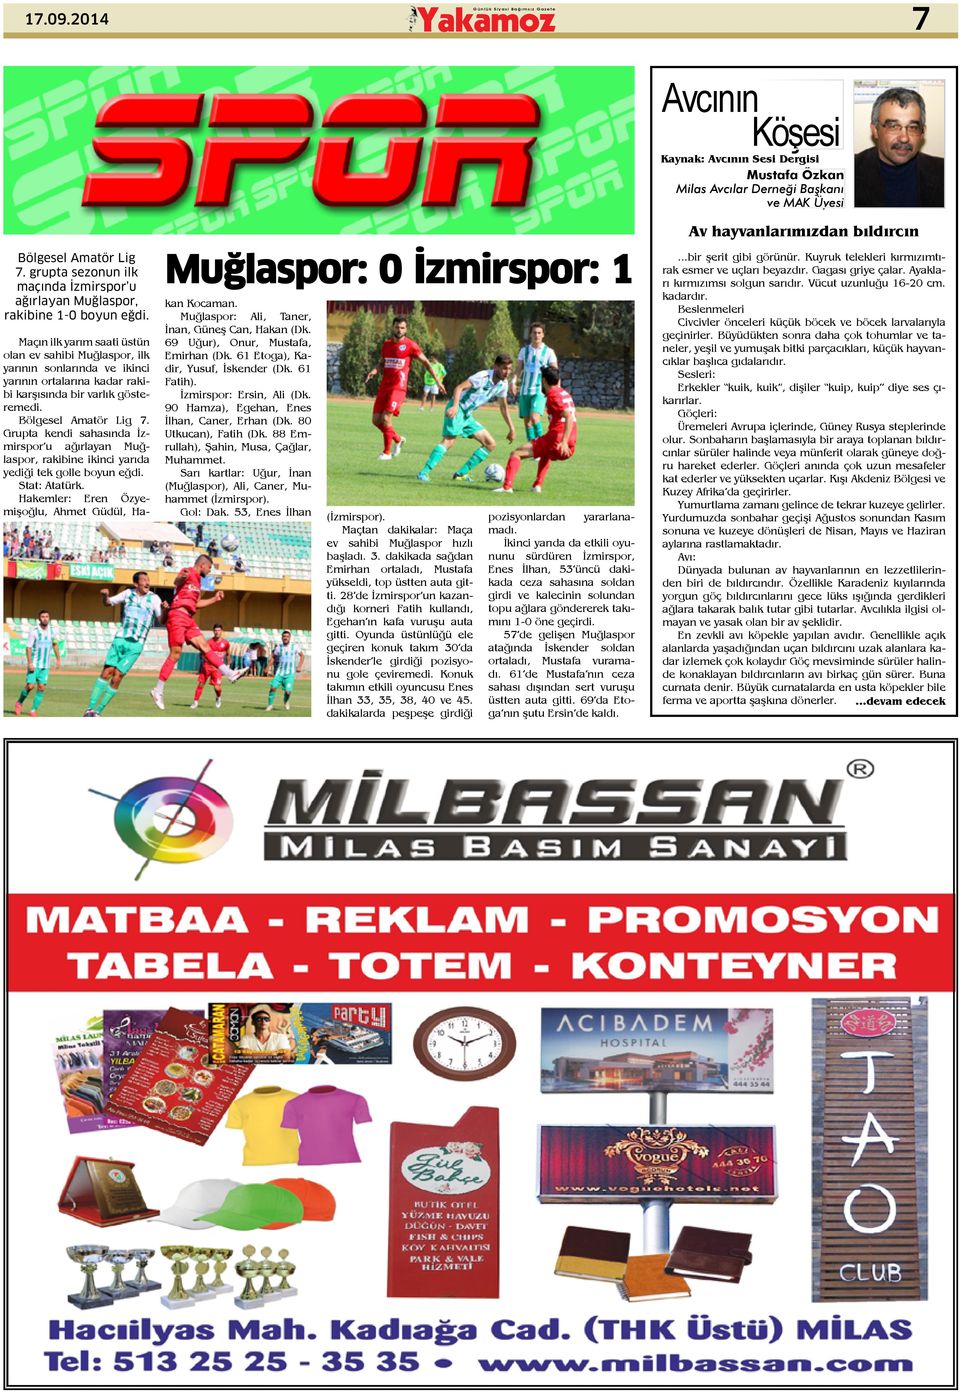 Muğlaspor: 0 İzmirspor: 1 Maçın ilk yarım saati üstün olan ev sahibi Muğlaspor, ilk yarının sonlarında ve ikinci yarının ortalarına kadar rakibi karşısında bir varlık gösteremedi.